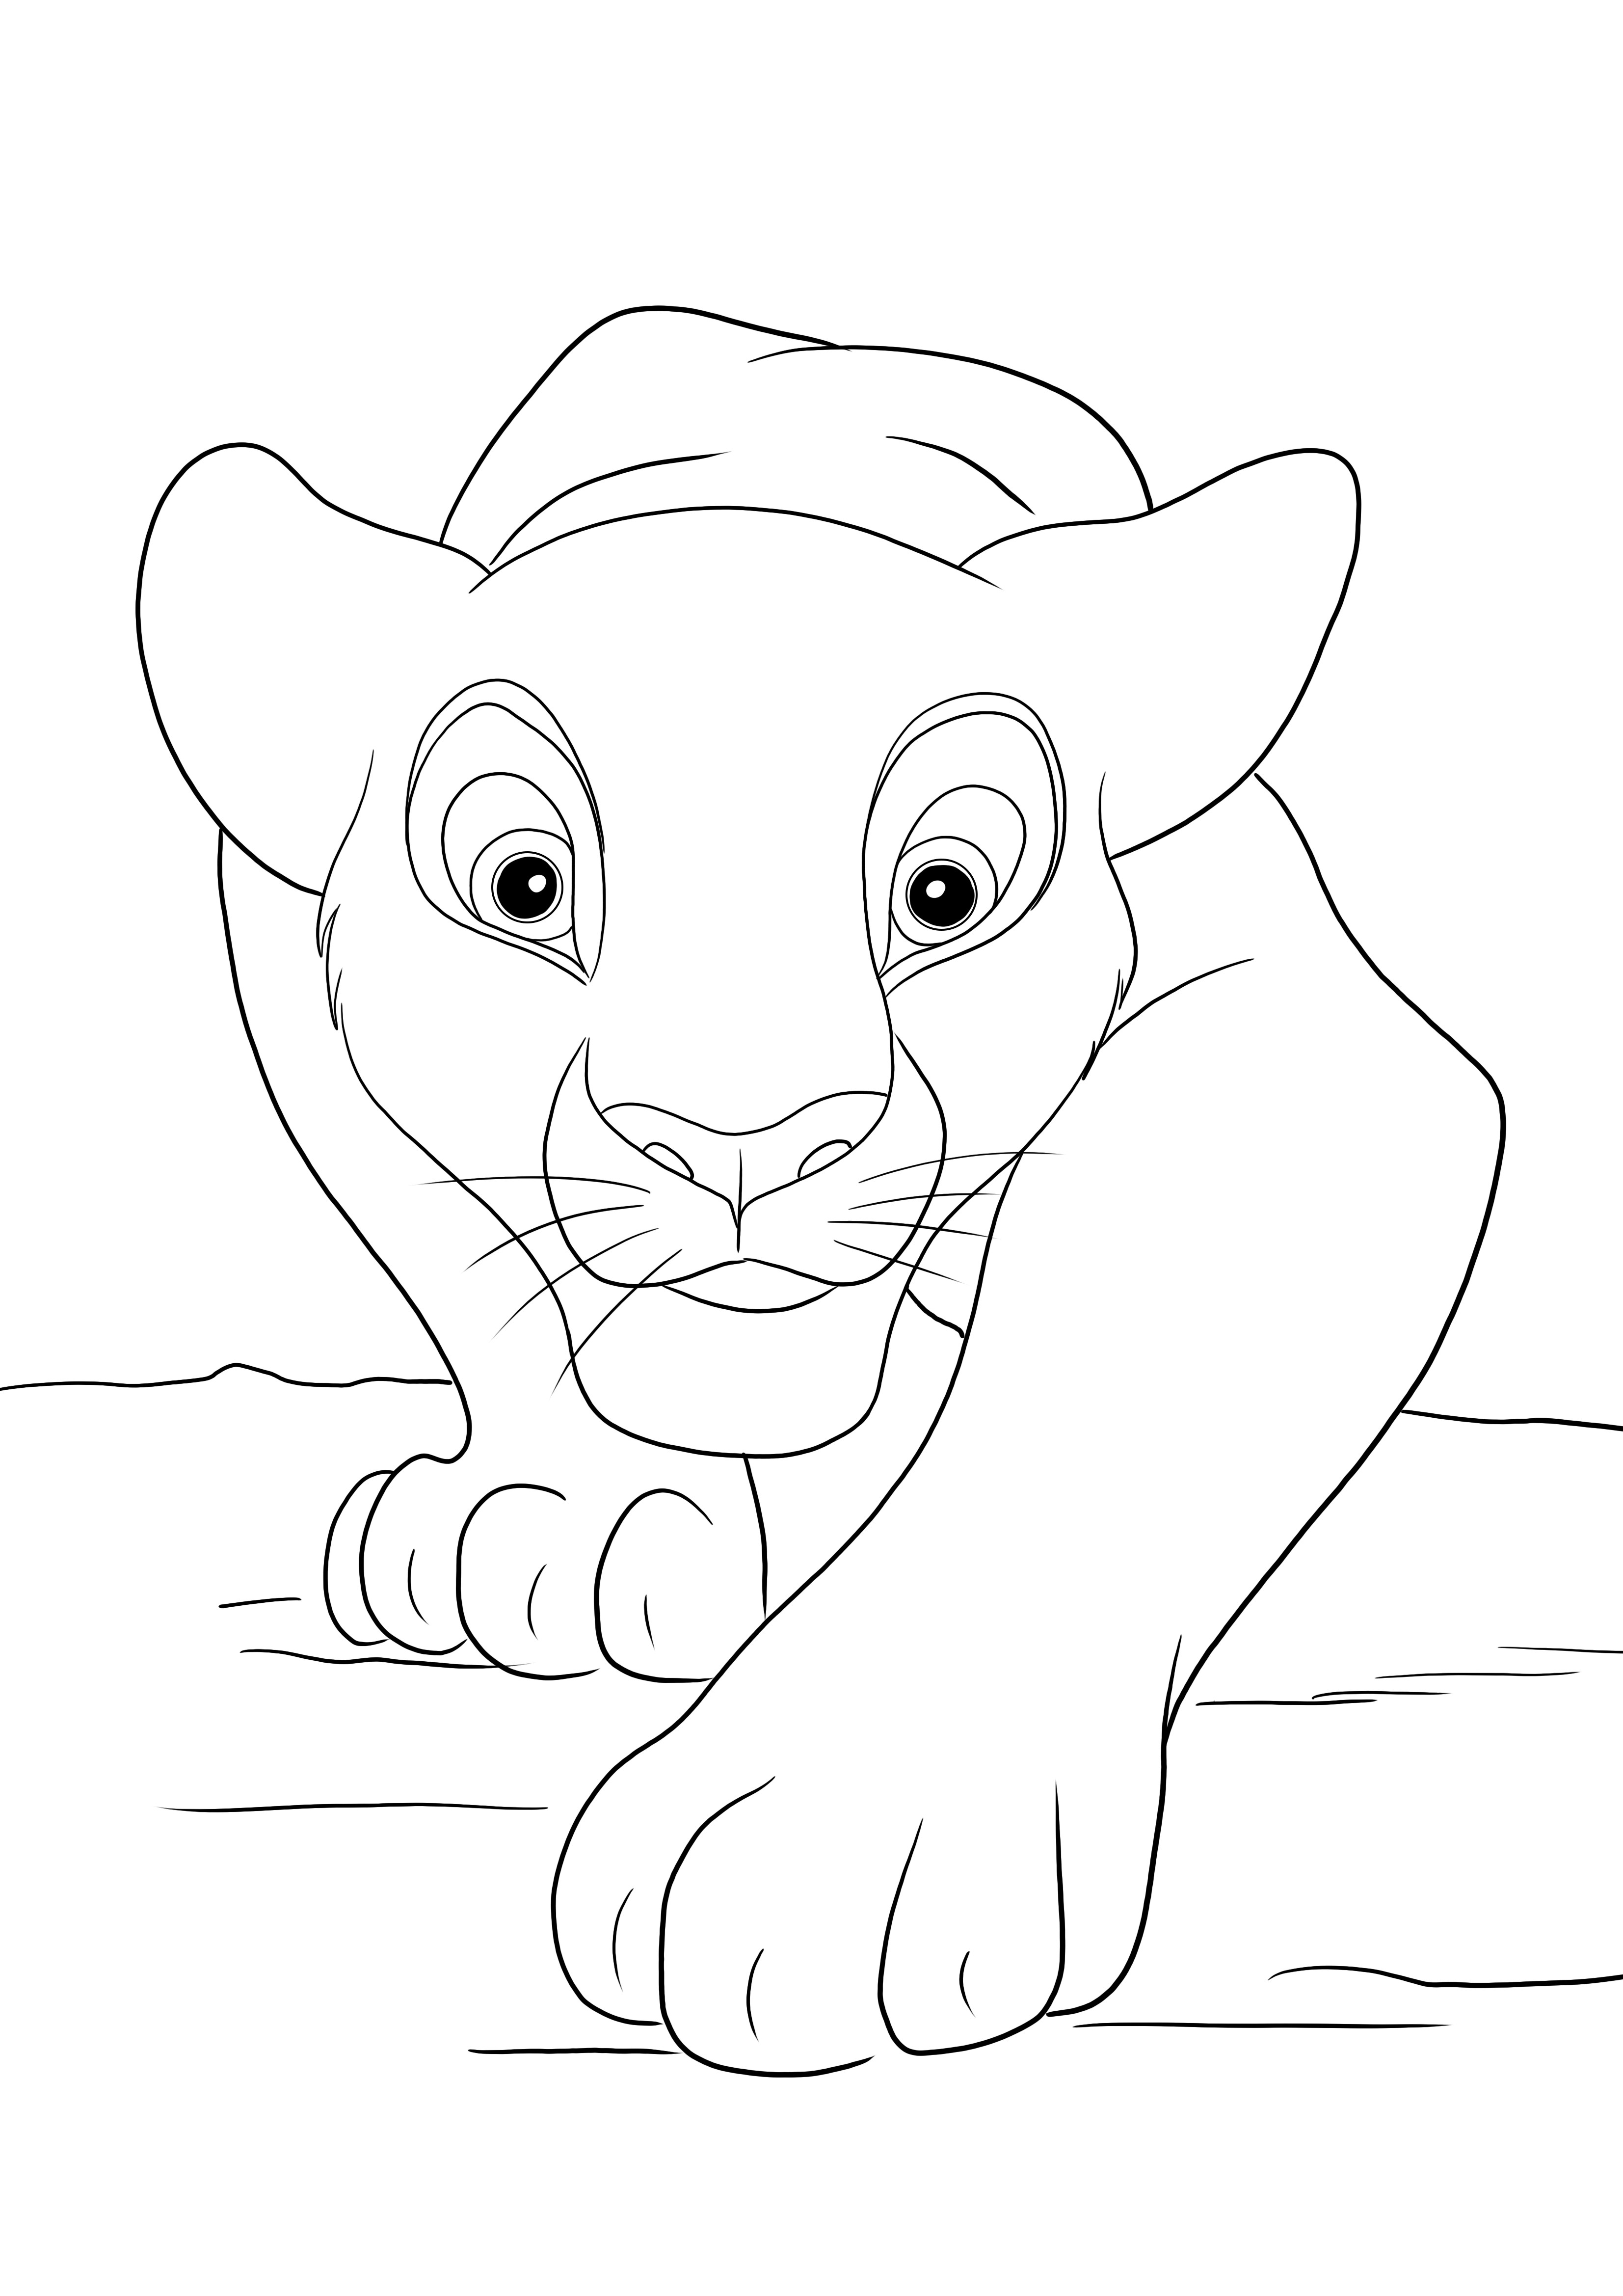 Dibujo de Simba cazando para colorear gratis para imprimir o guardar para más tarde